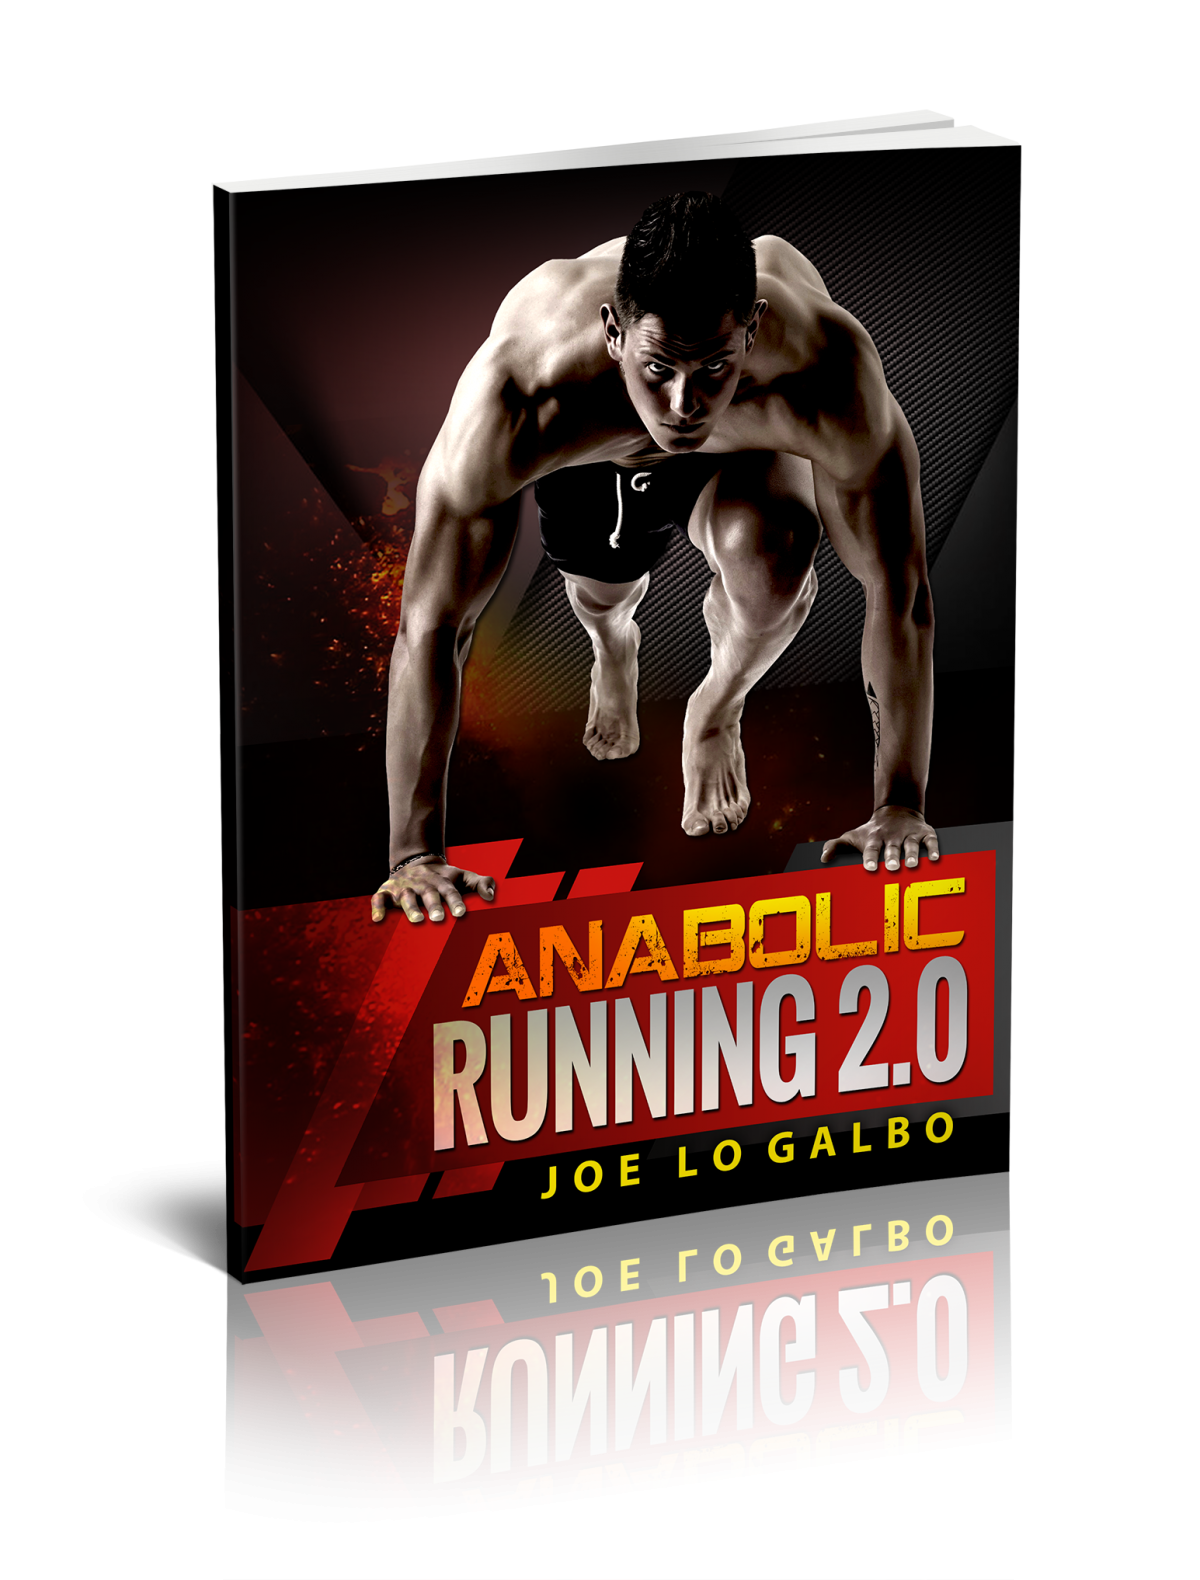 Anabolic running 2.0